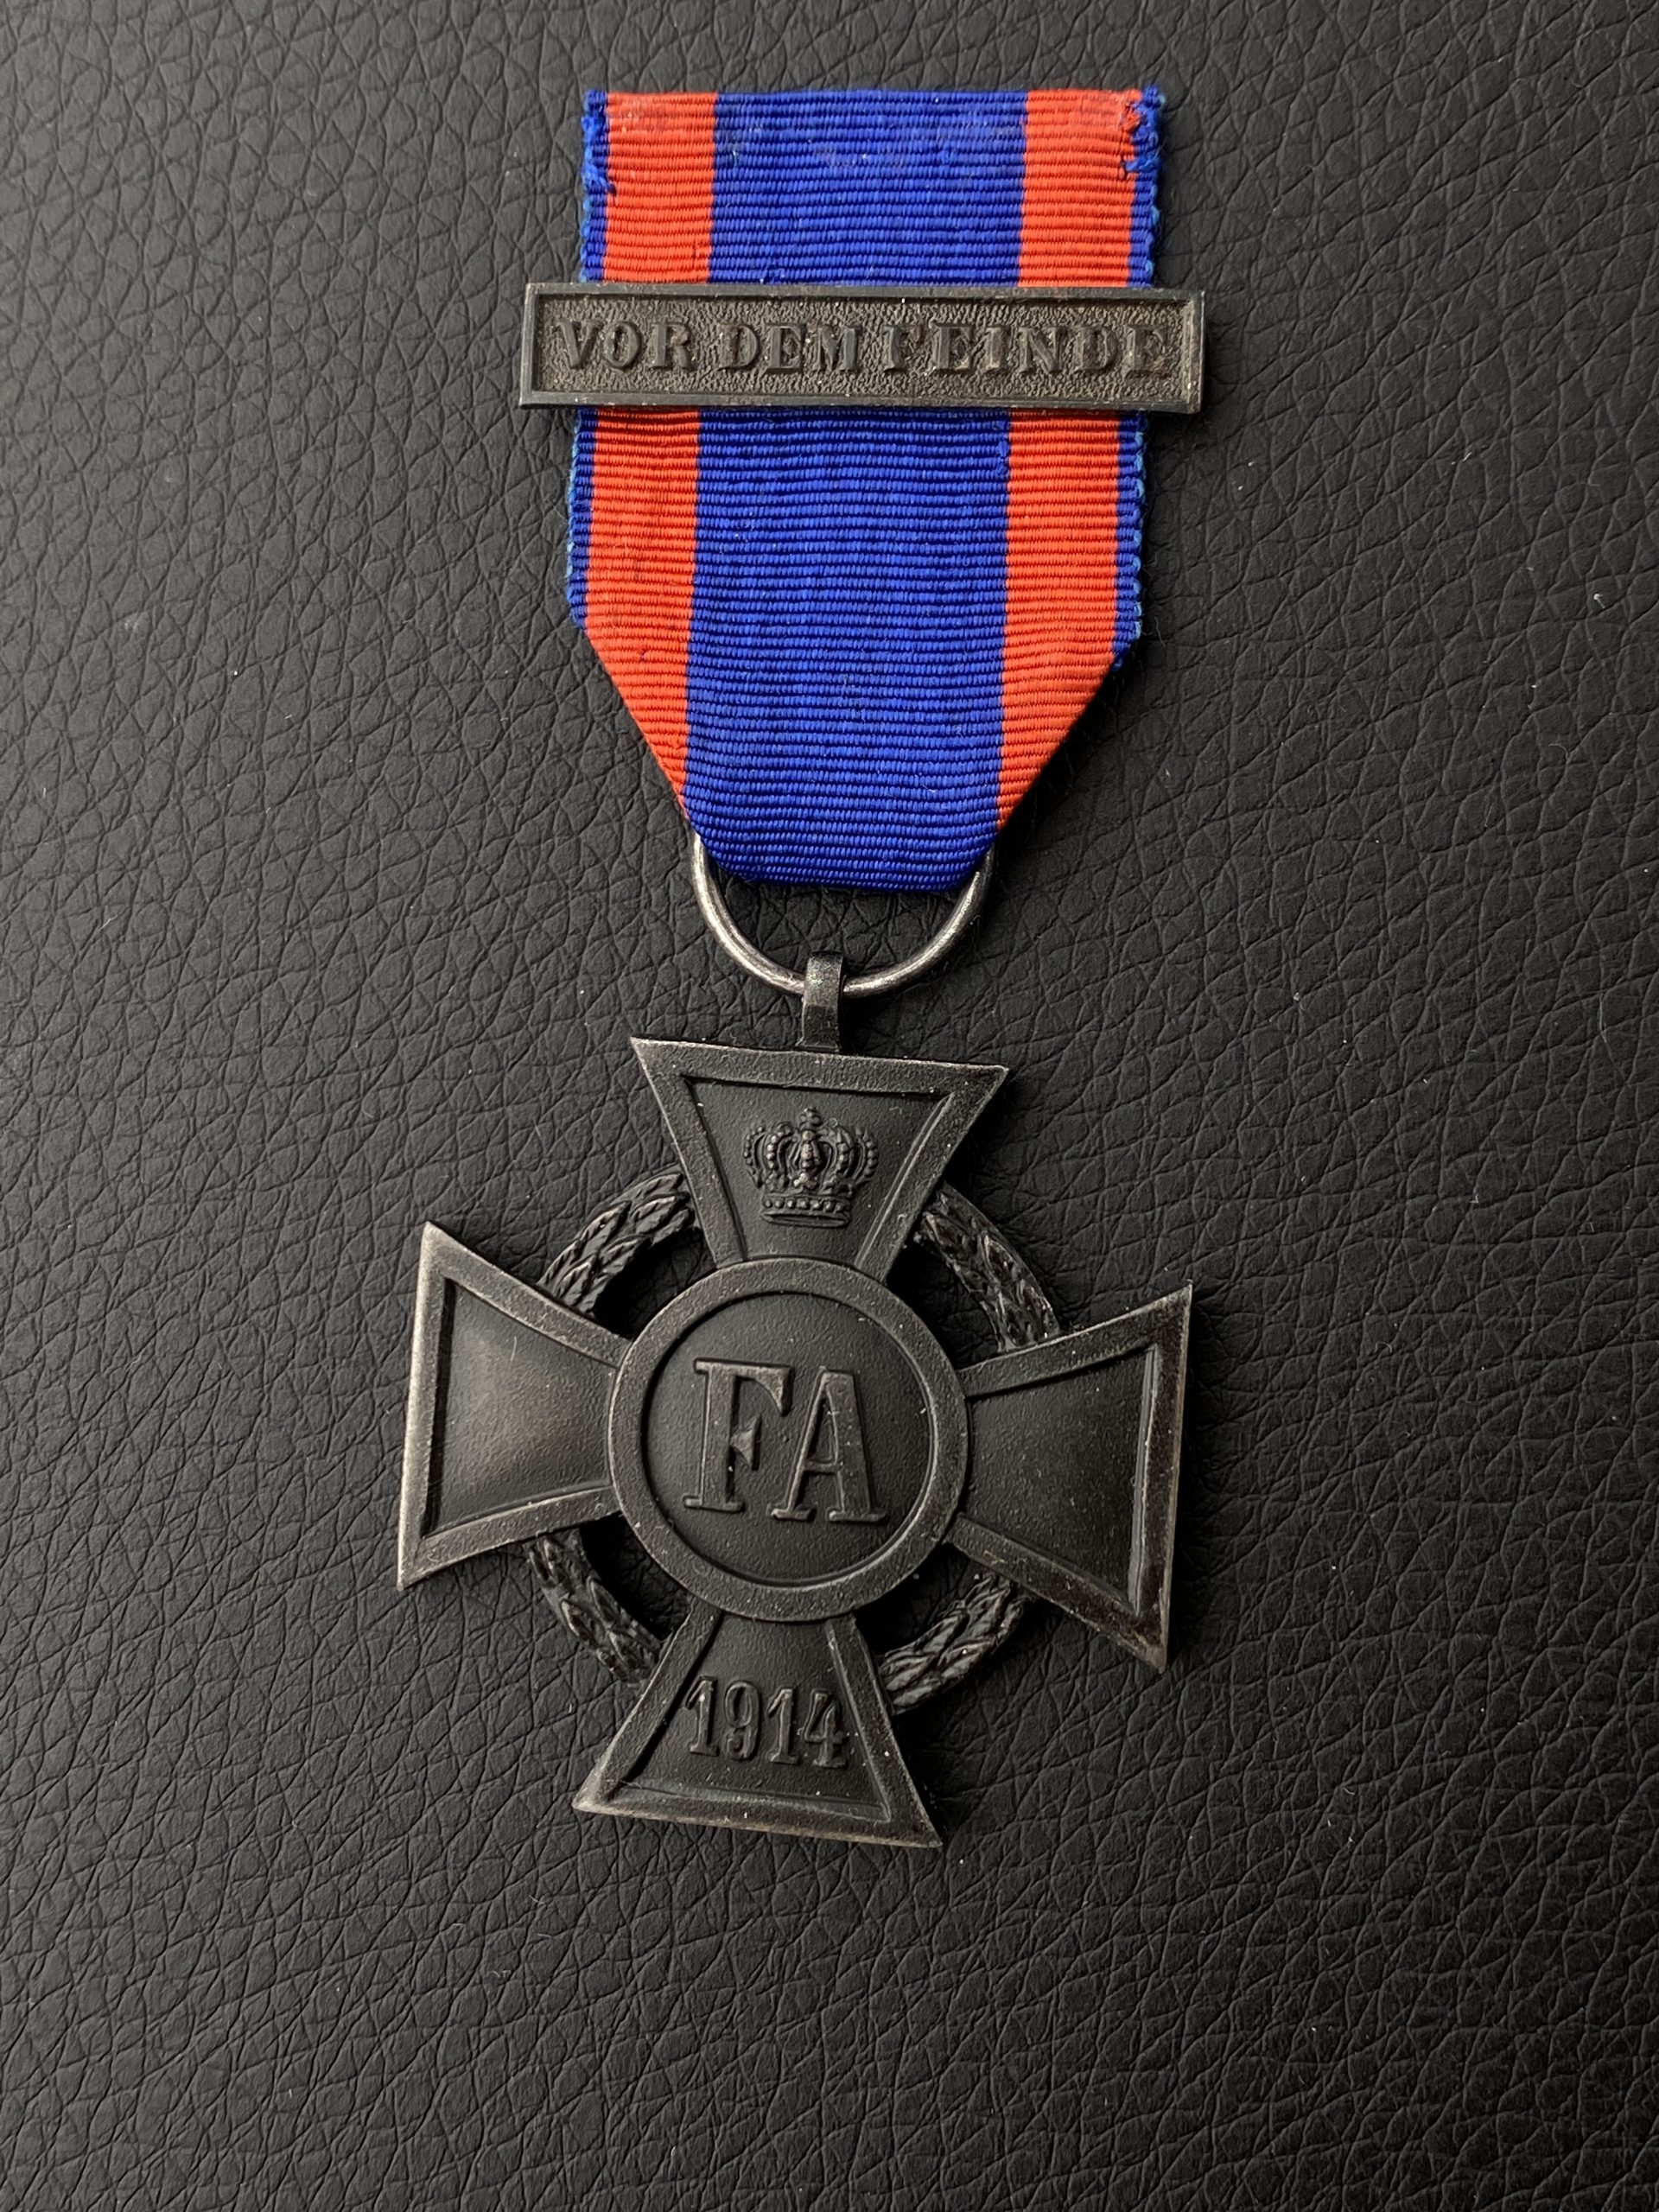 Ольденбургский крест Фридриха-Августа «За военные заслуги» 2-го класса с планкой 